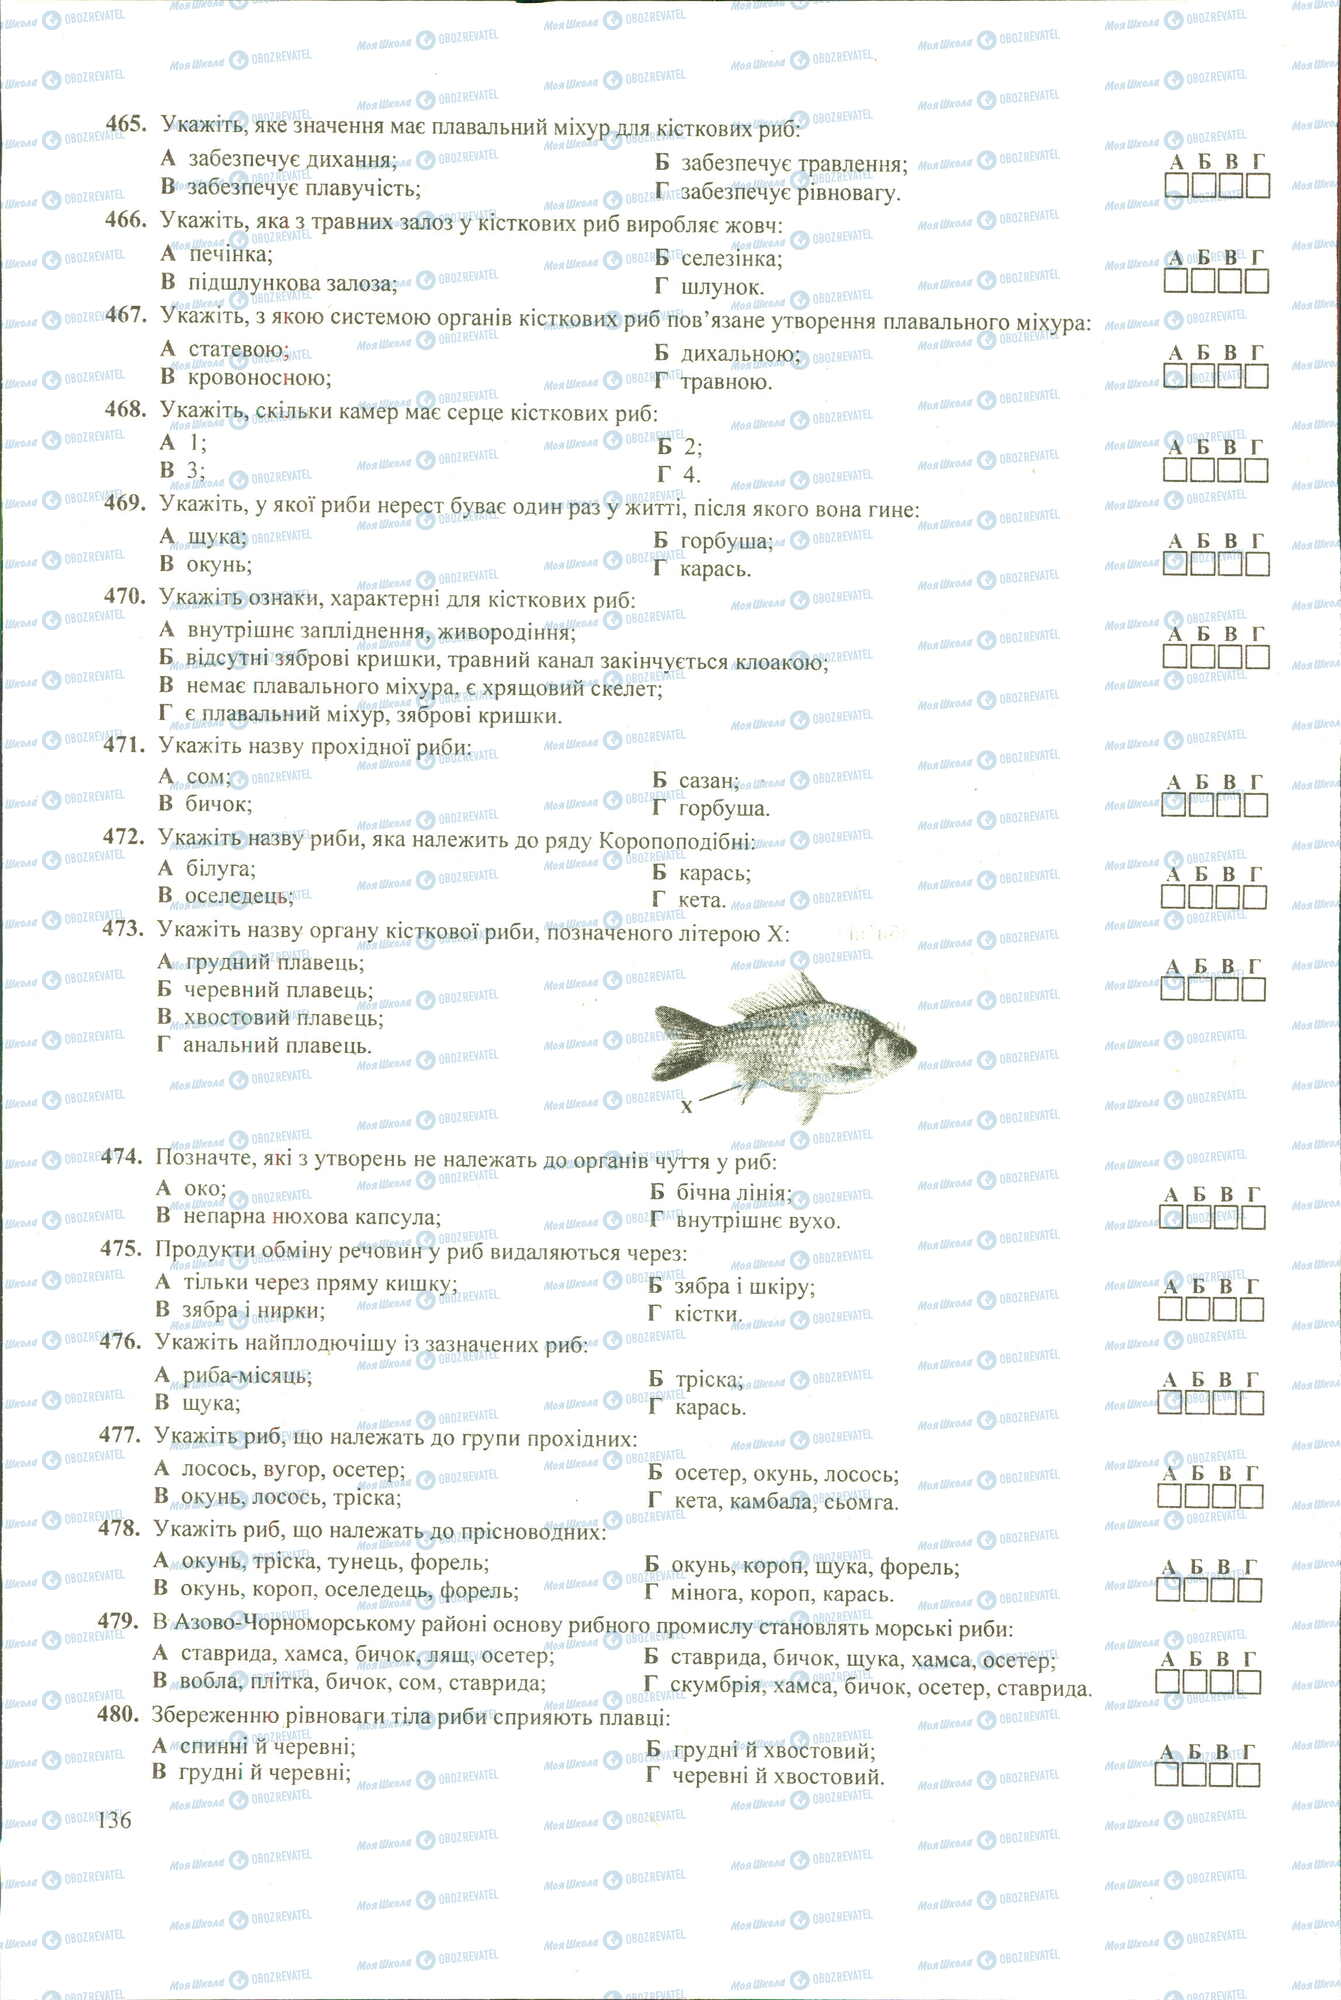 ЗНО Биология 11 класс страница 465-480